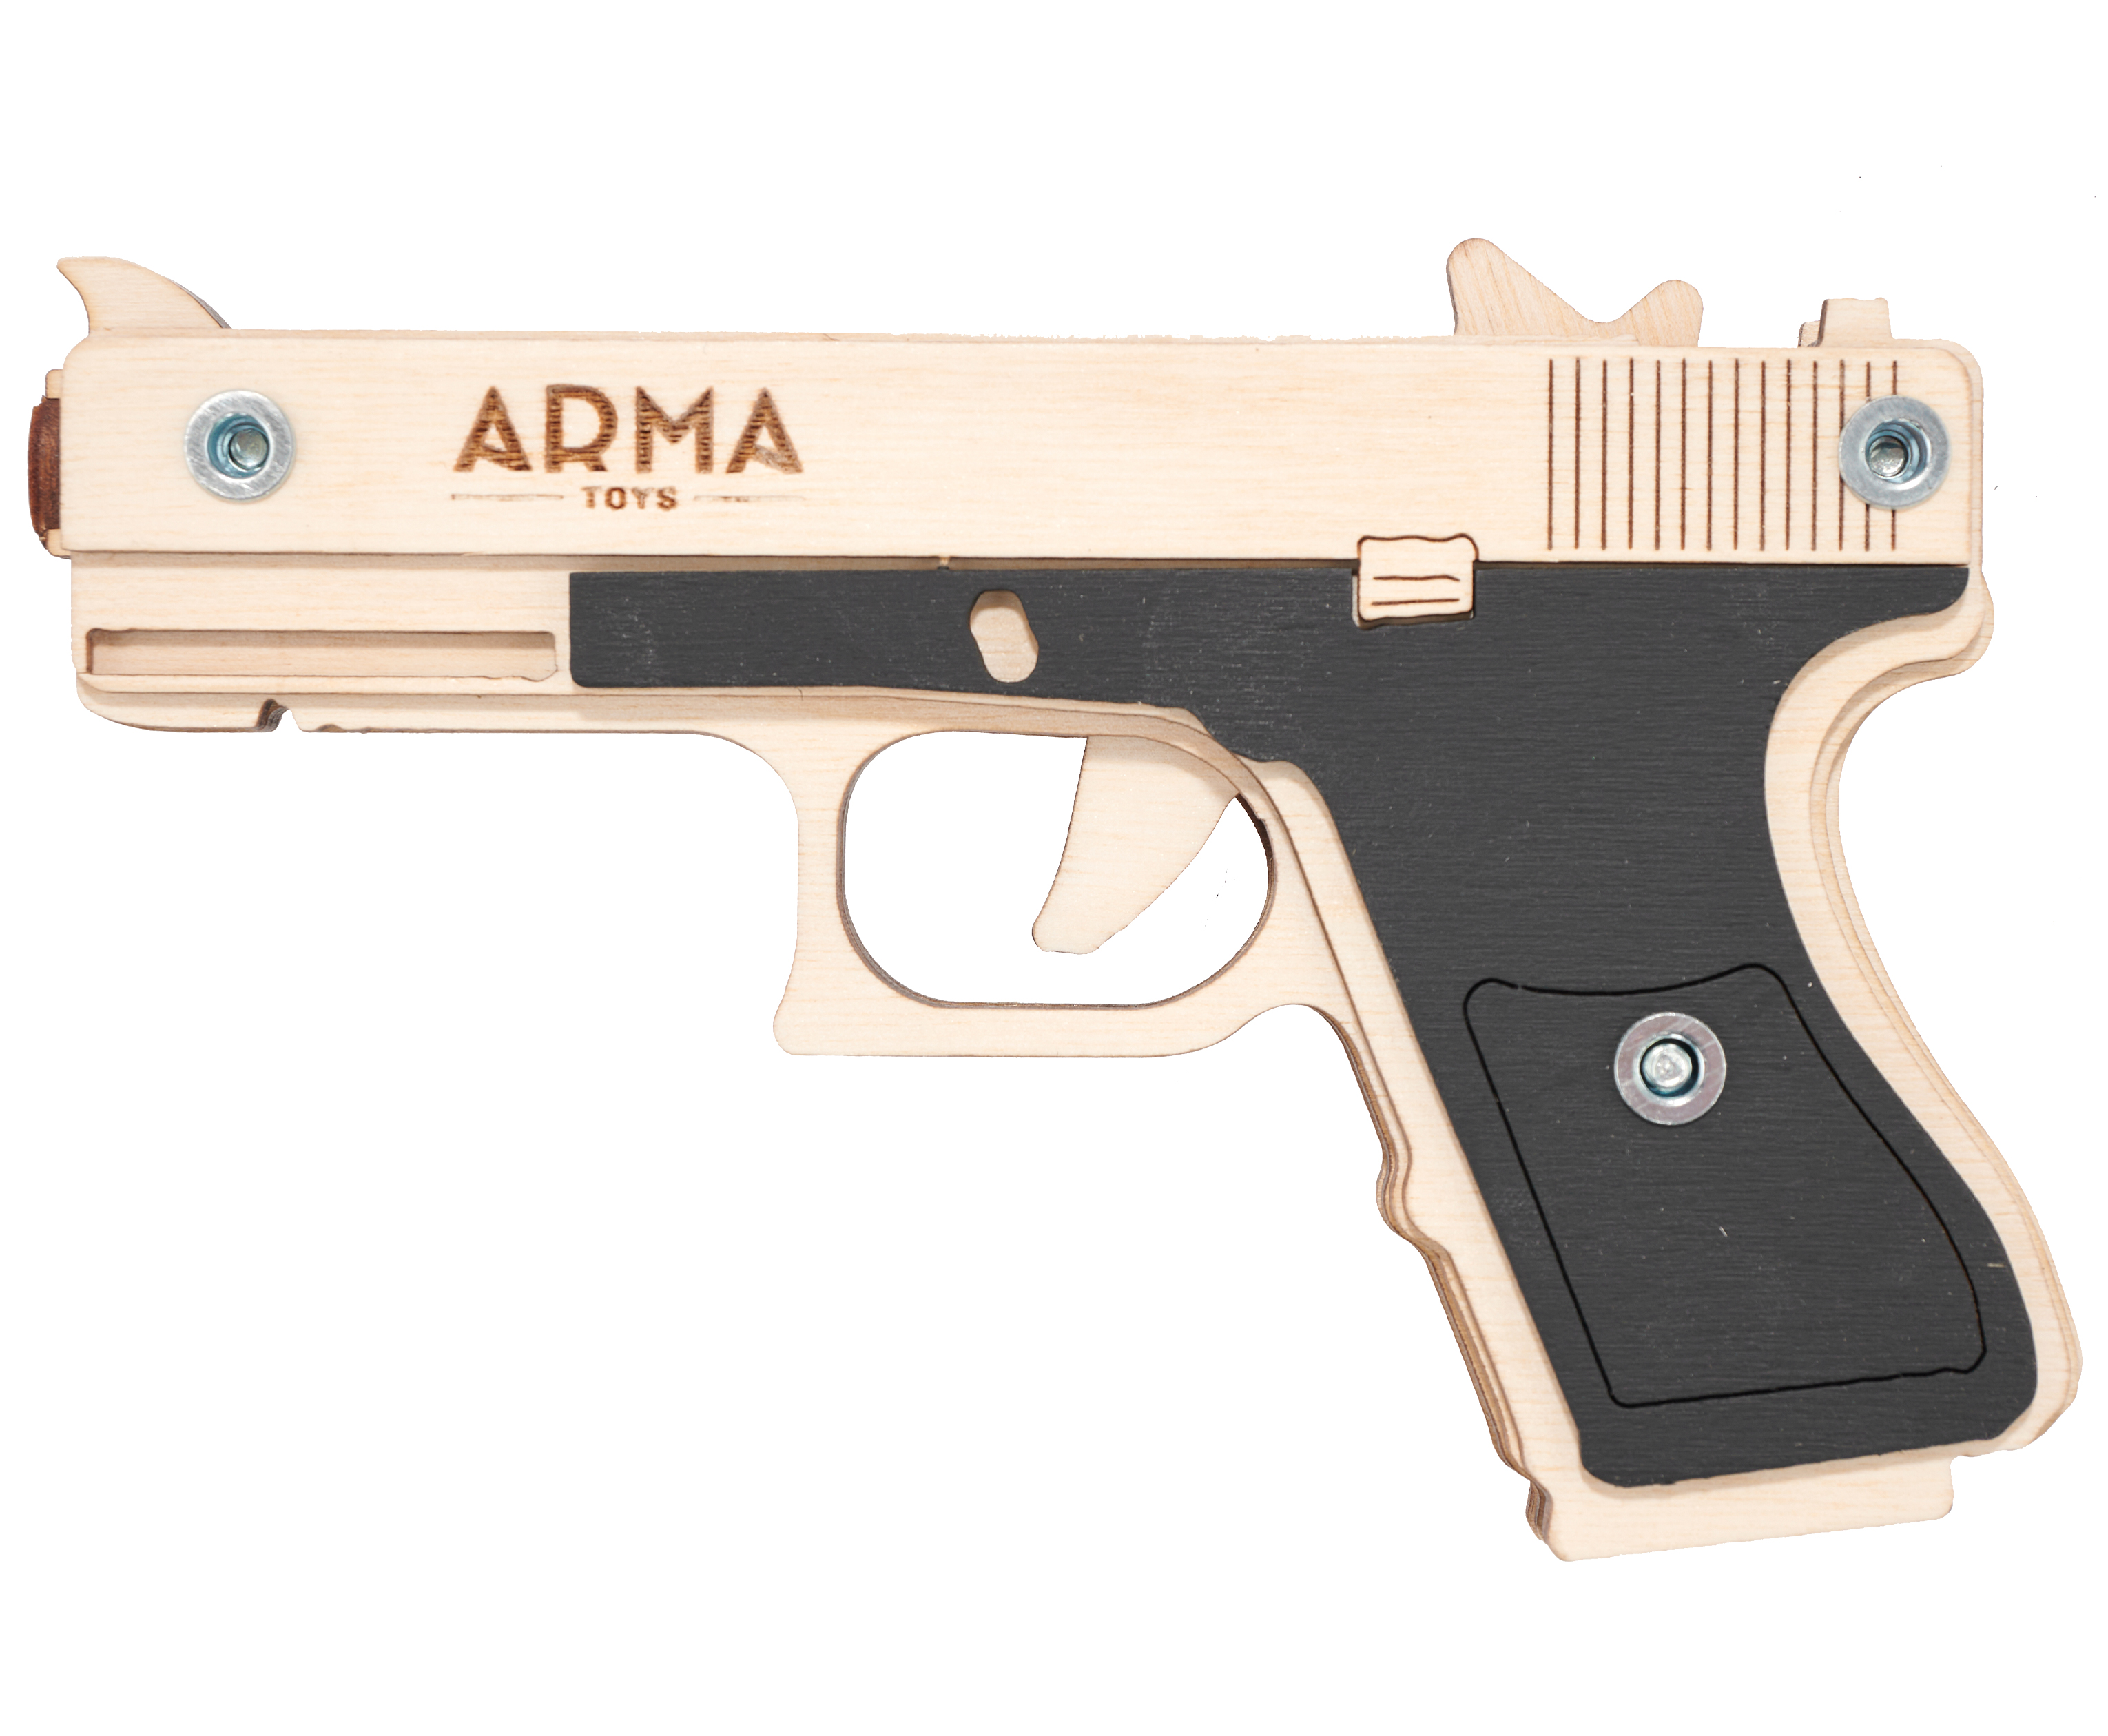 Резинкострел игрушечный Arma toys пистолет Glock Light макет, Глок 26, AT027, окрашенный